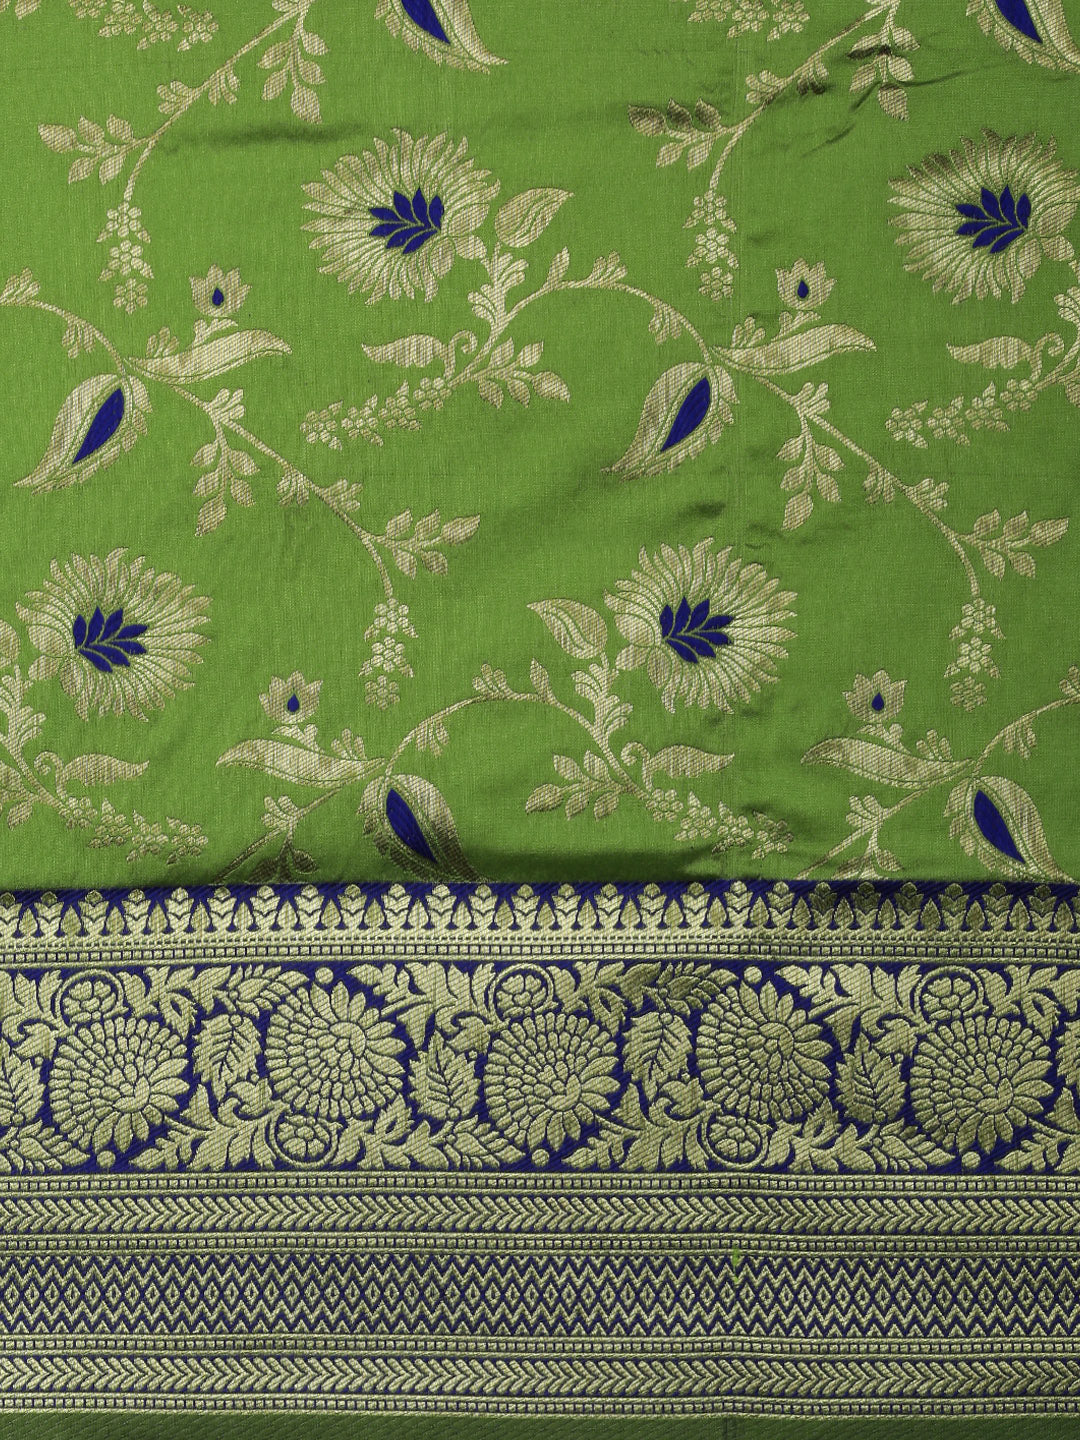 Pista green  color Designer Banarasi silk saree with meenkari work design